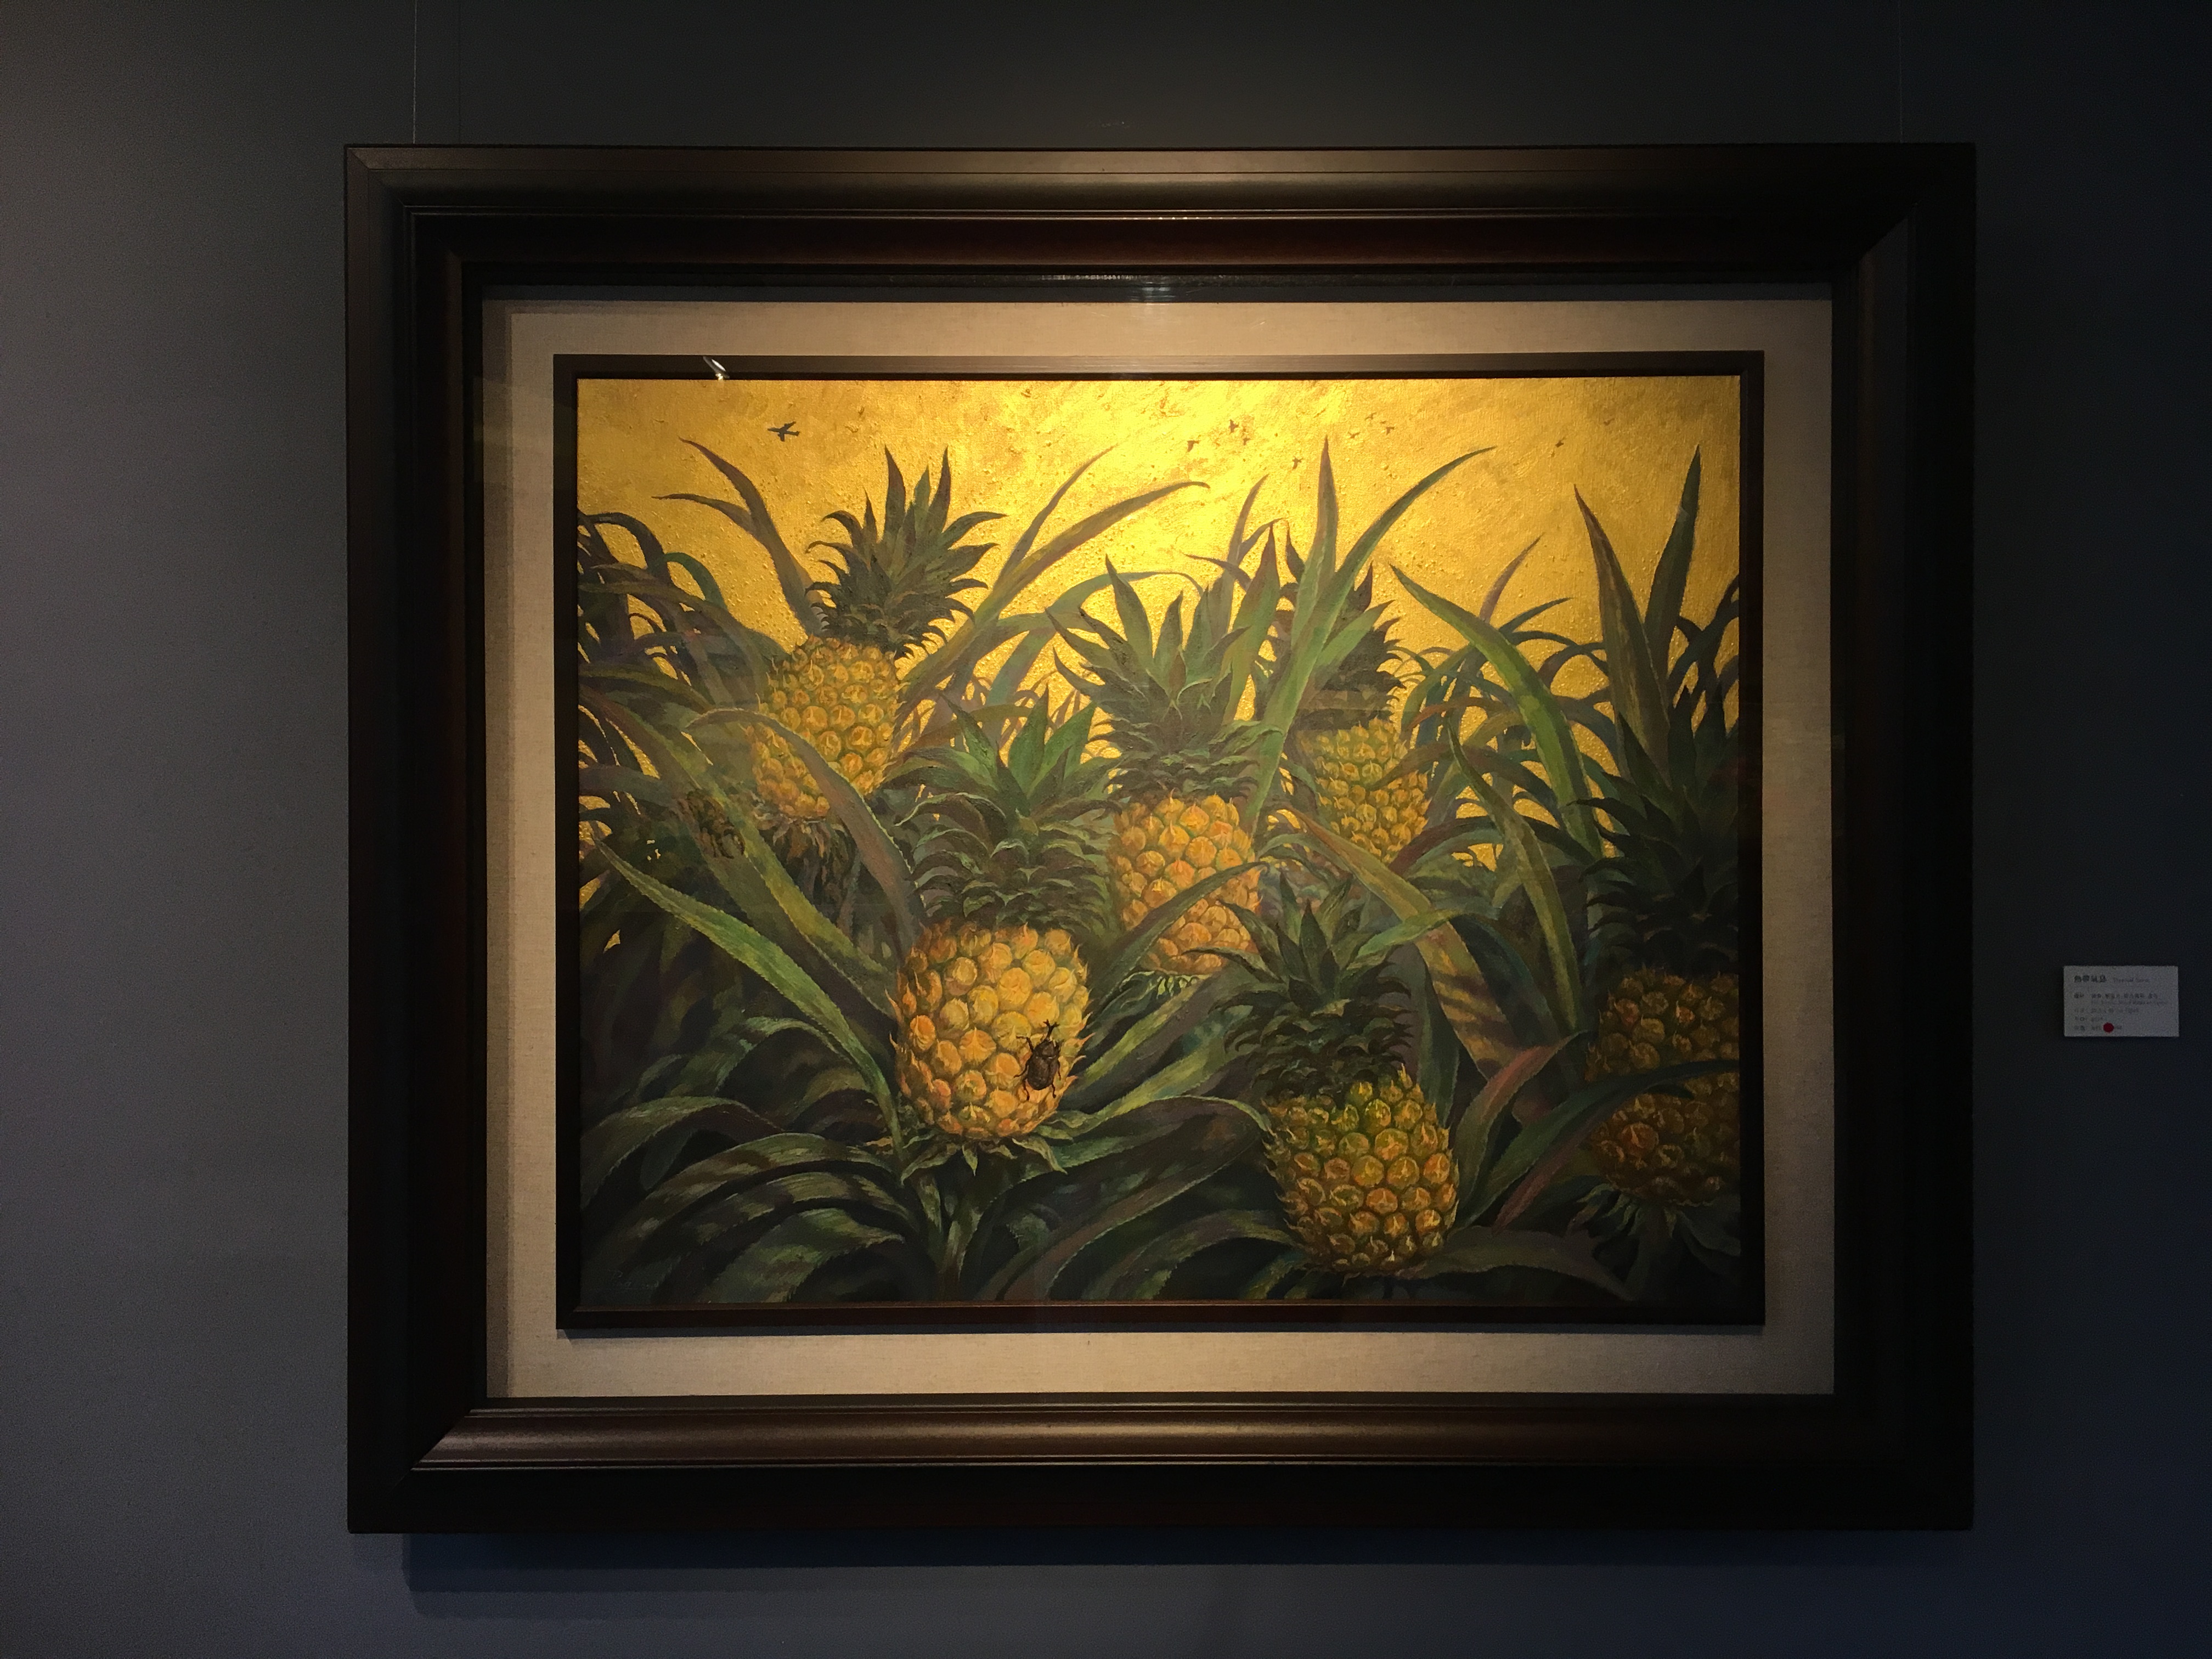 劉子平，《熱帶氣息》，72.5 x 91 cm，油彩、壓克力、綜合媒材、畫布，2019。